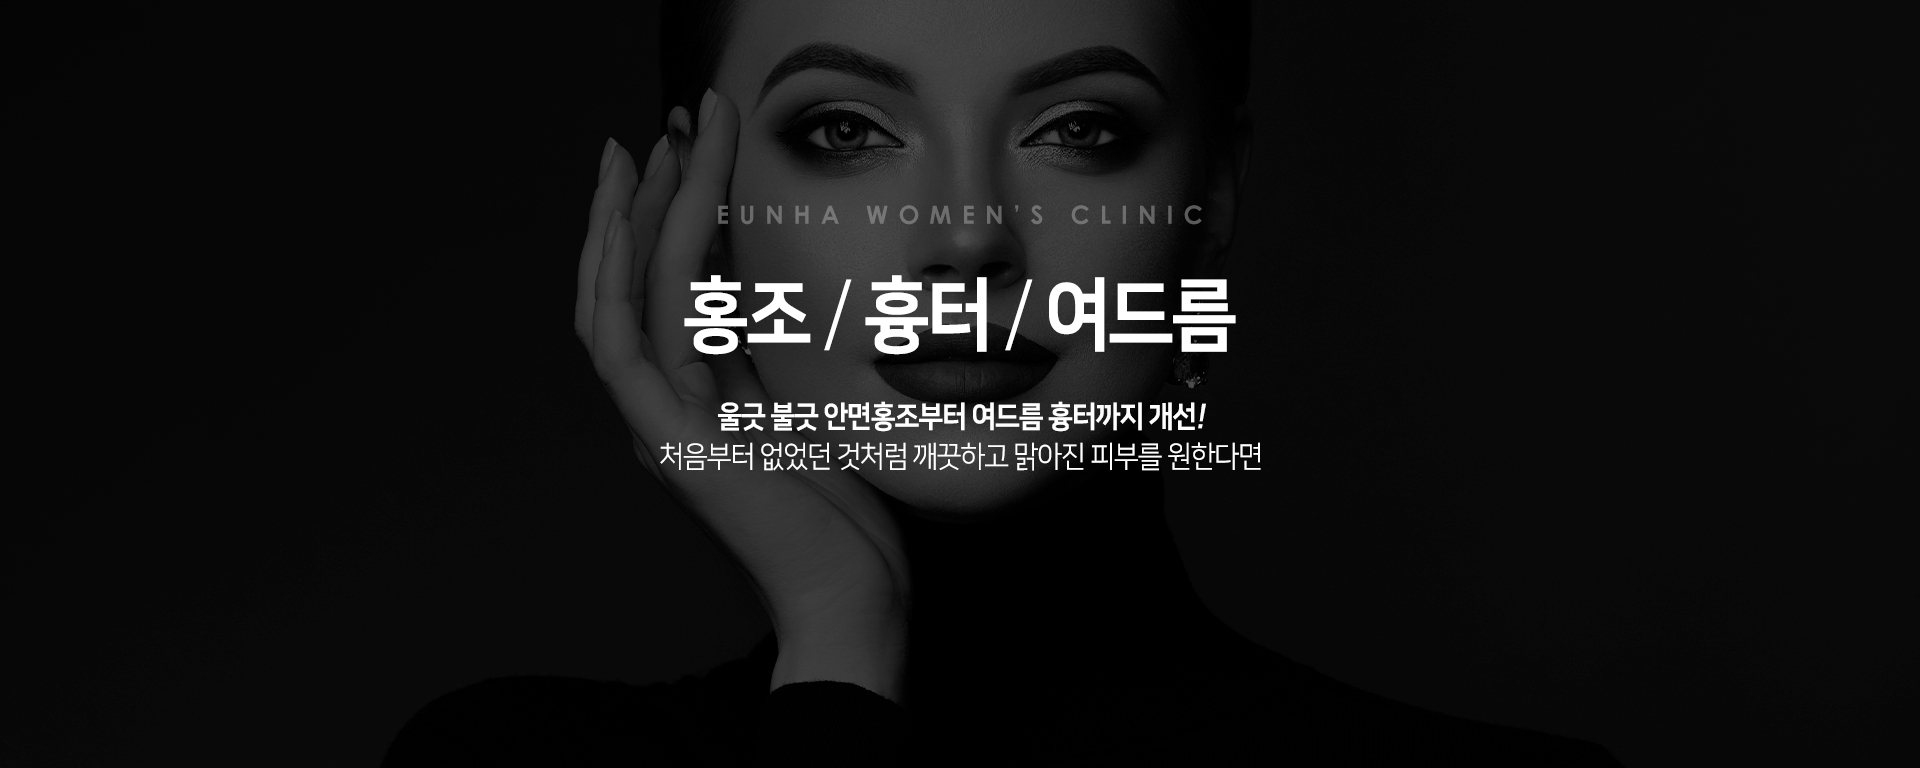 홍조/흉터/여드름배너